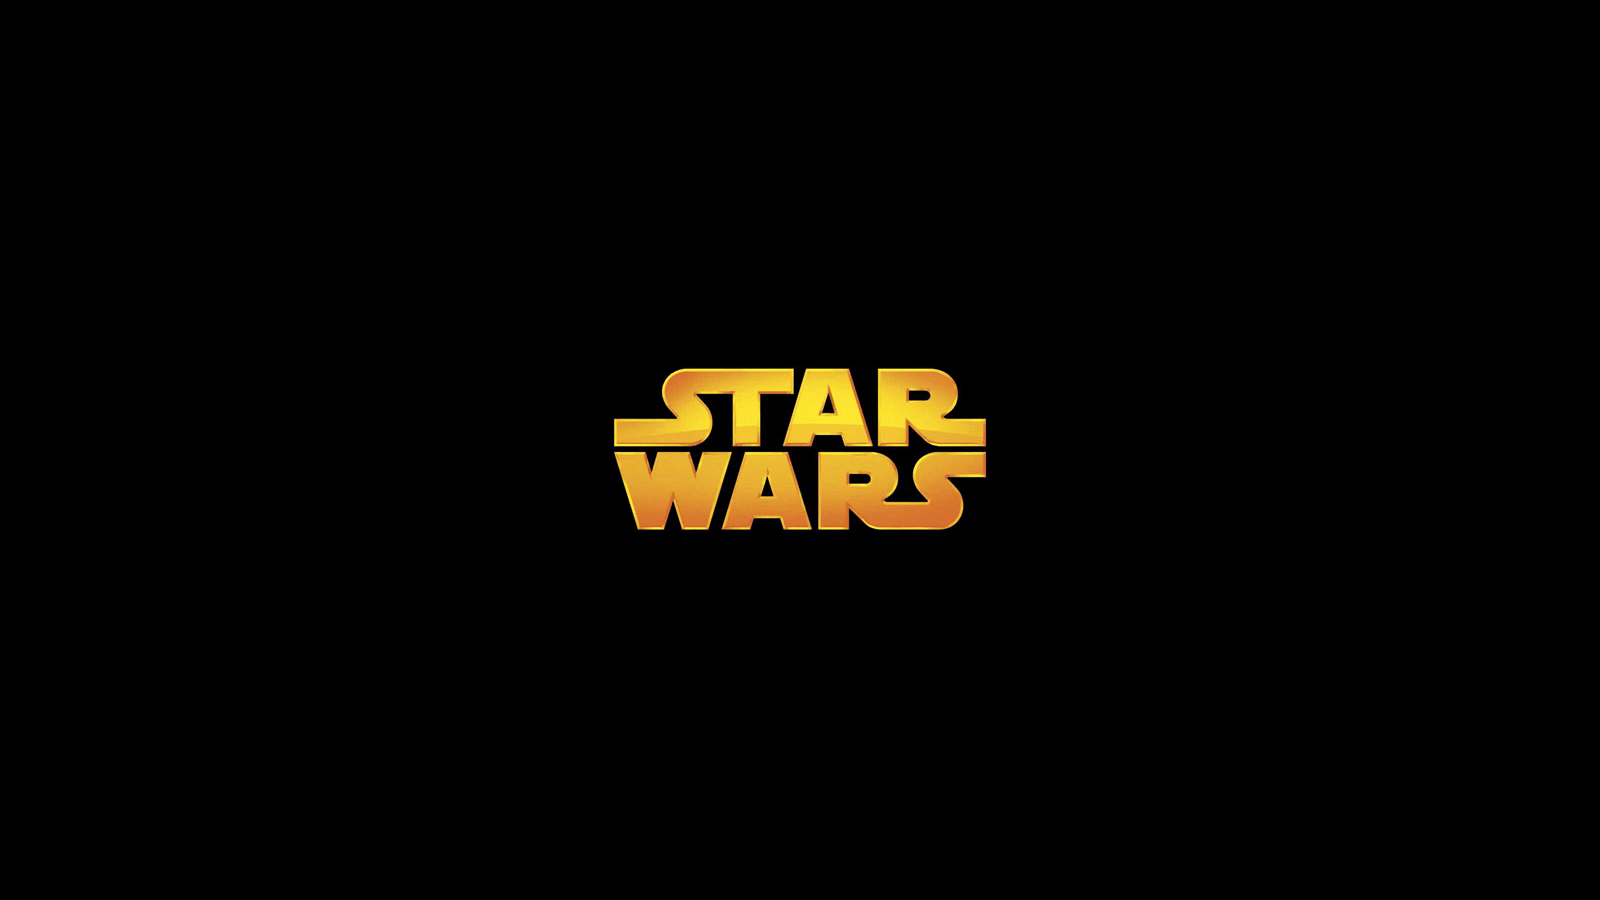 Star wars logo HD wallpapers | Pxfuel